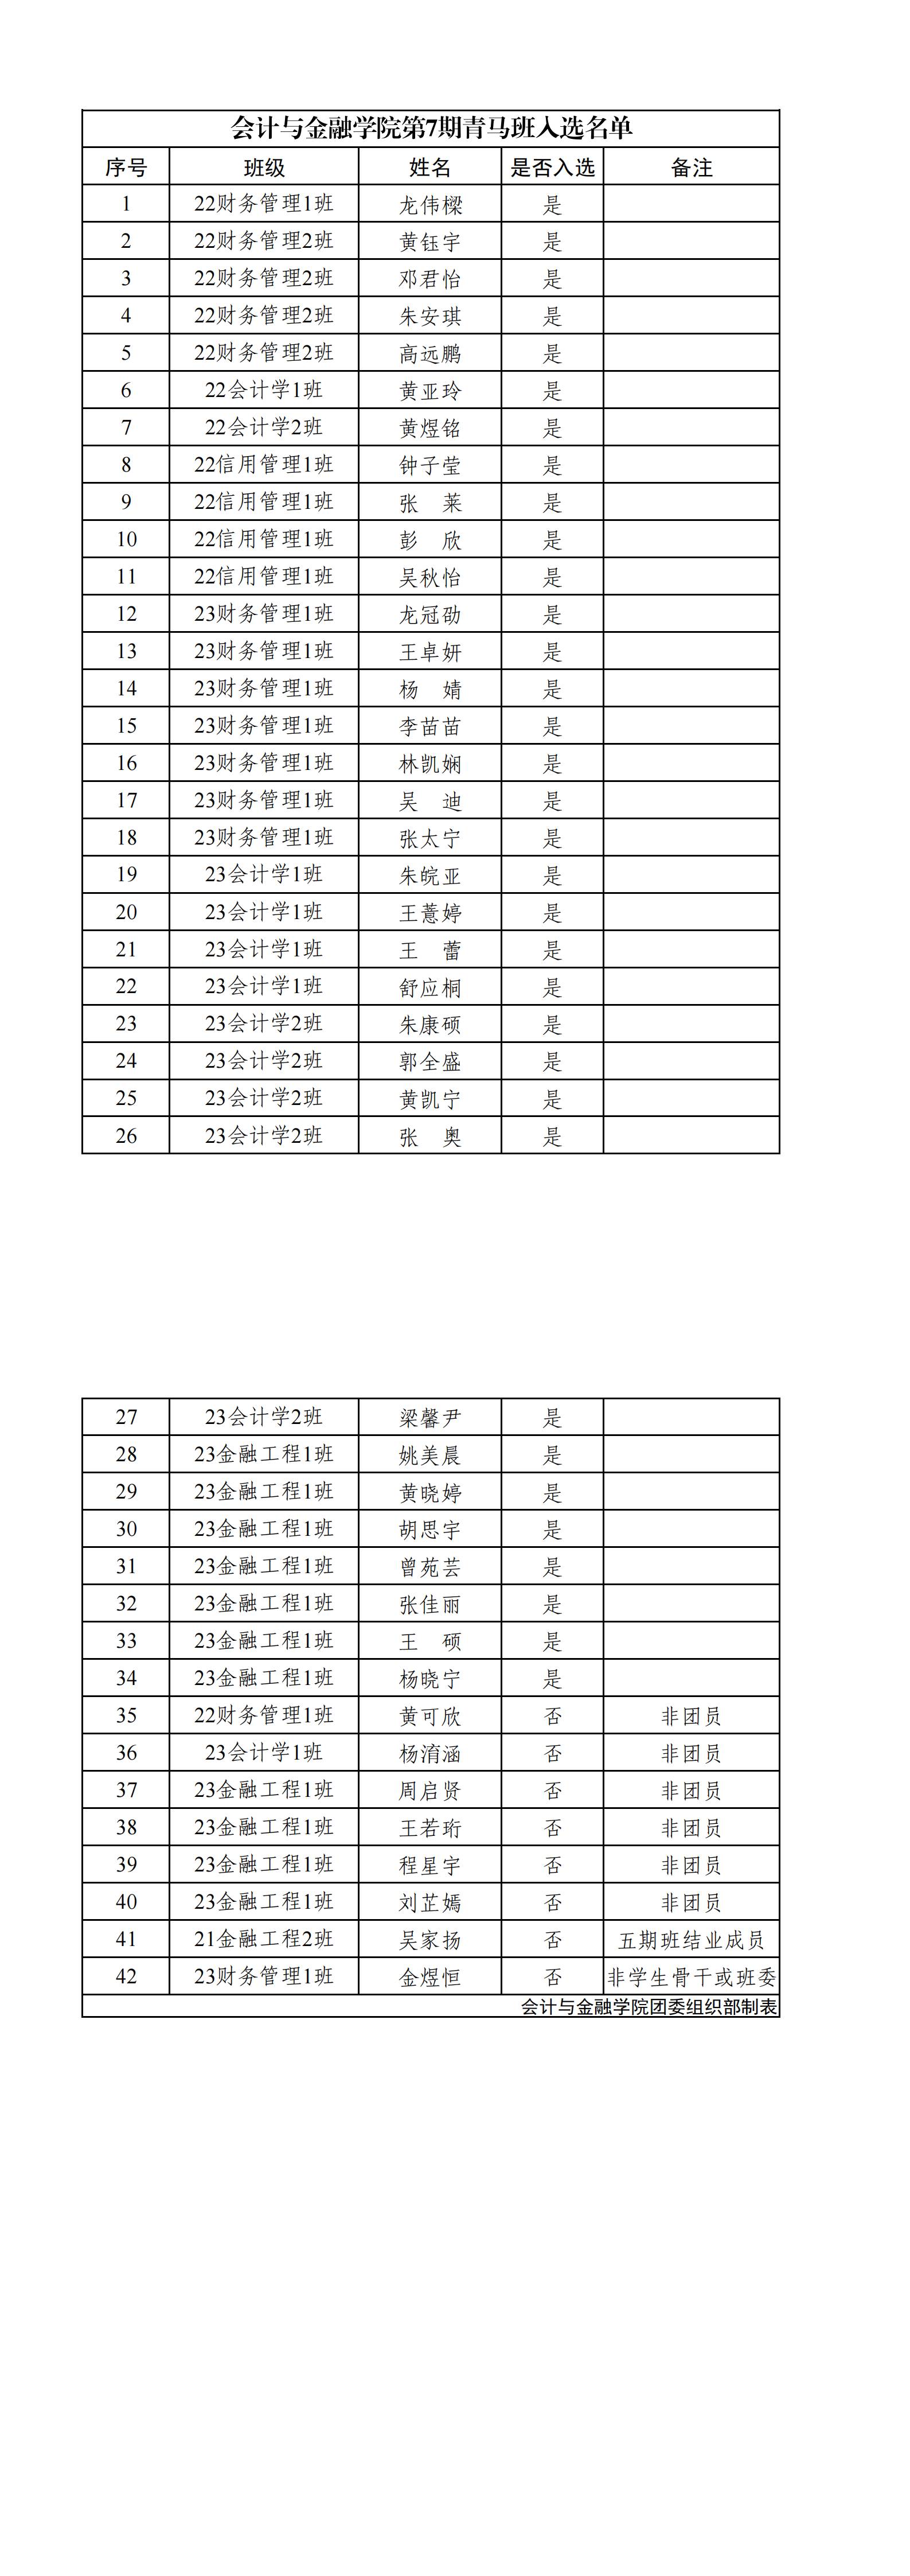 【公布】会计与金融学院第7期青马工程培训班入选名单_00(1).jpg